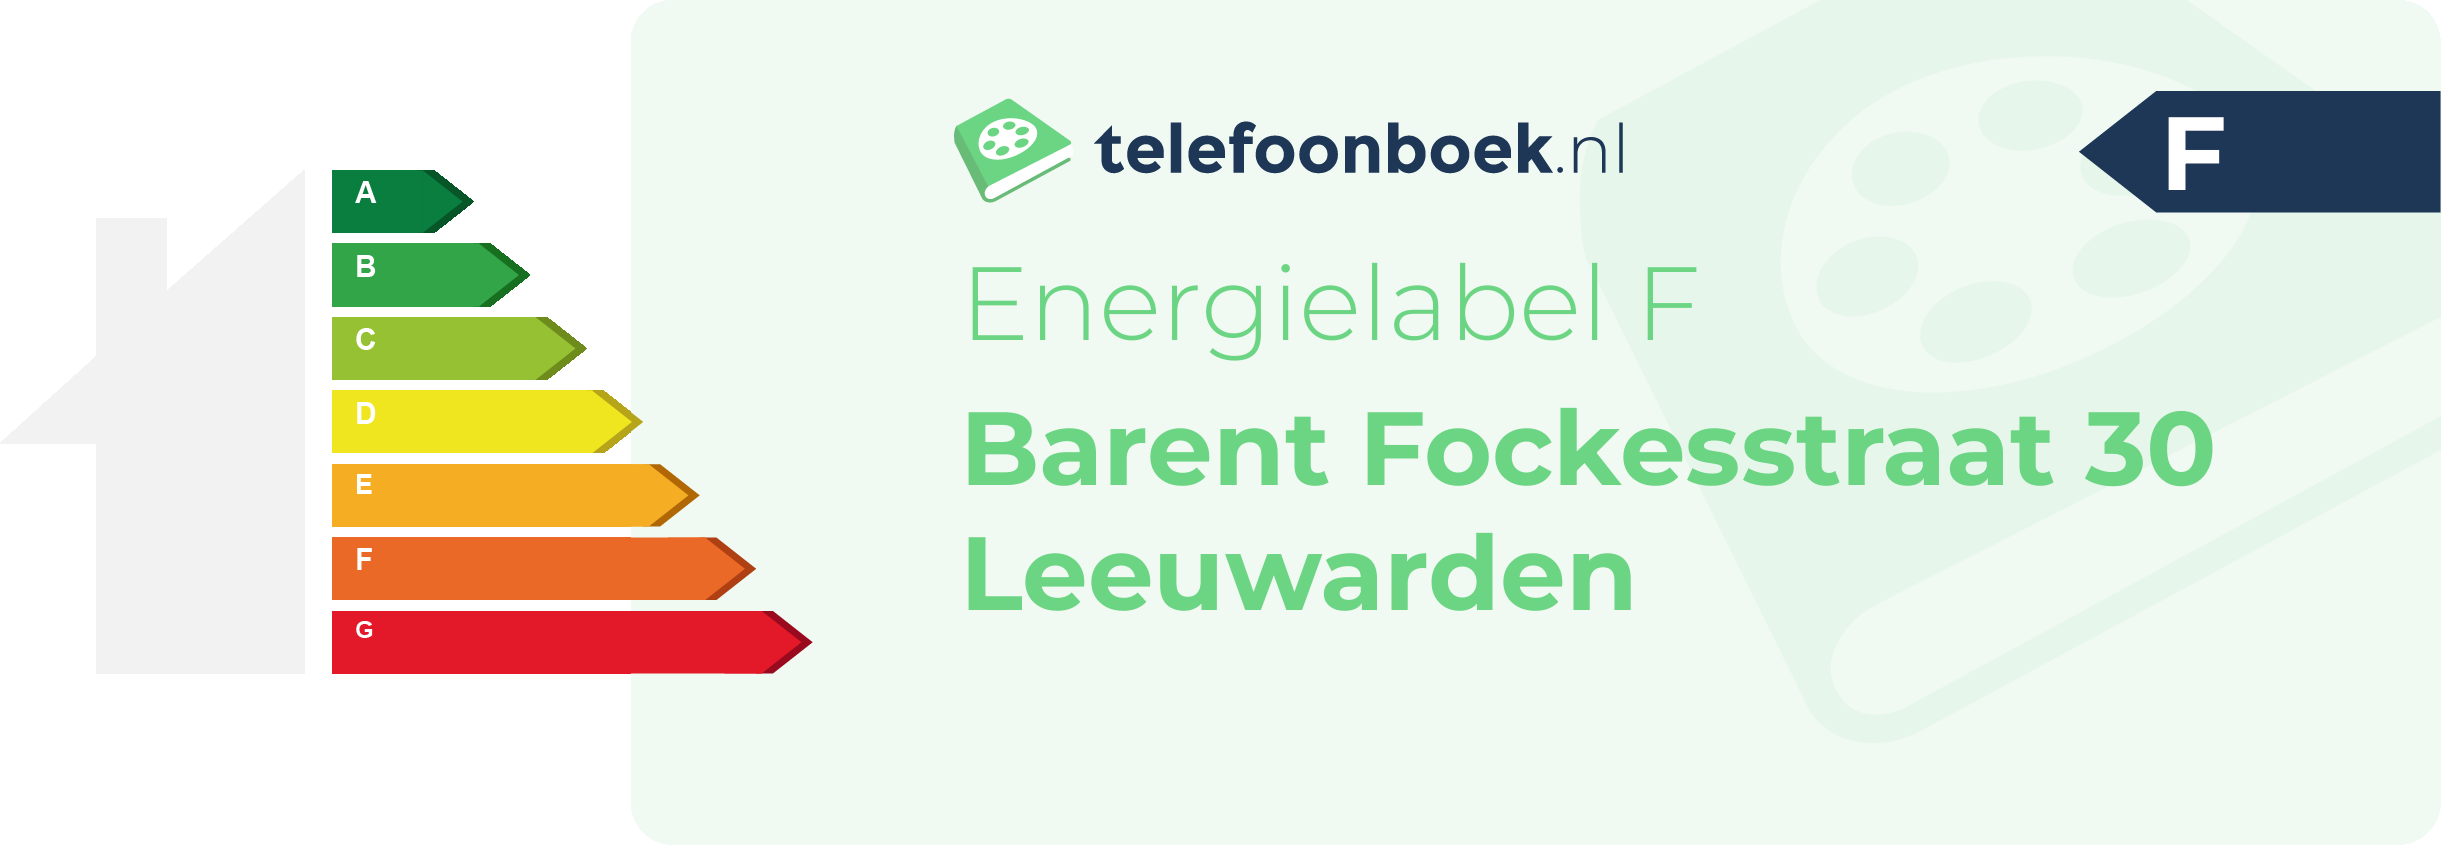 Energielabel Barent Fockesstraat 30 Leeuwarden